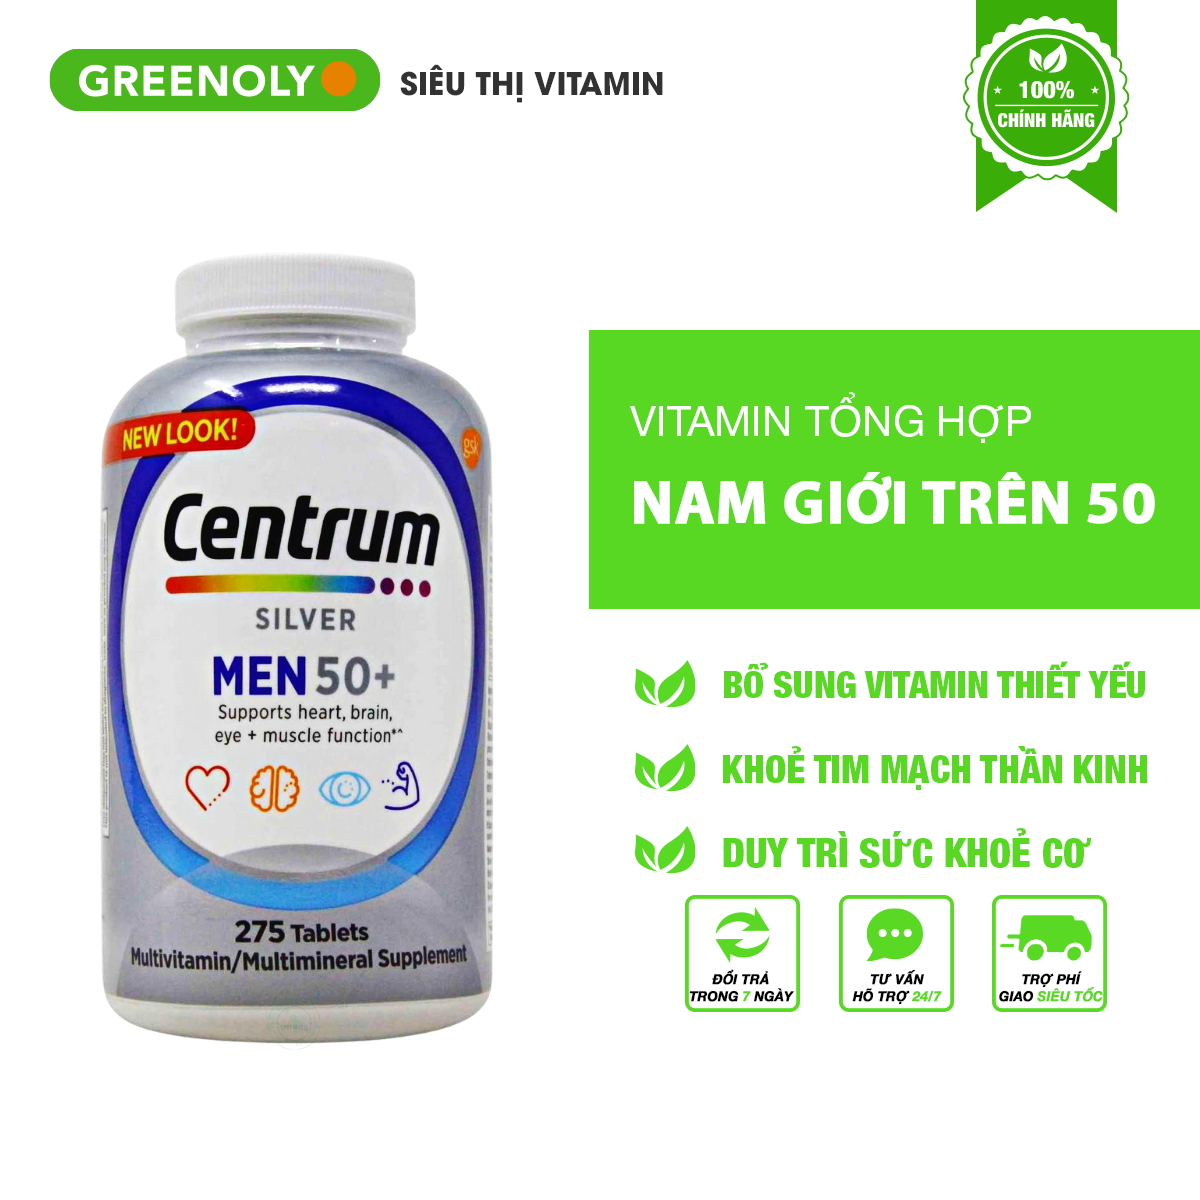 Centrum Silver 50+ Vitamin Tổng Hợp Cho Nam Trên 50 Tuổi Hộp 275 Viên